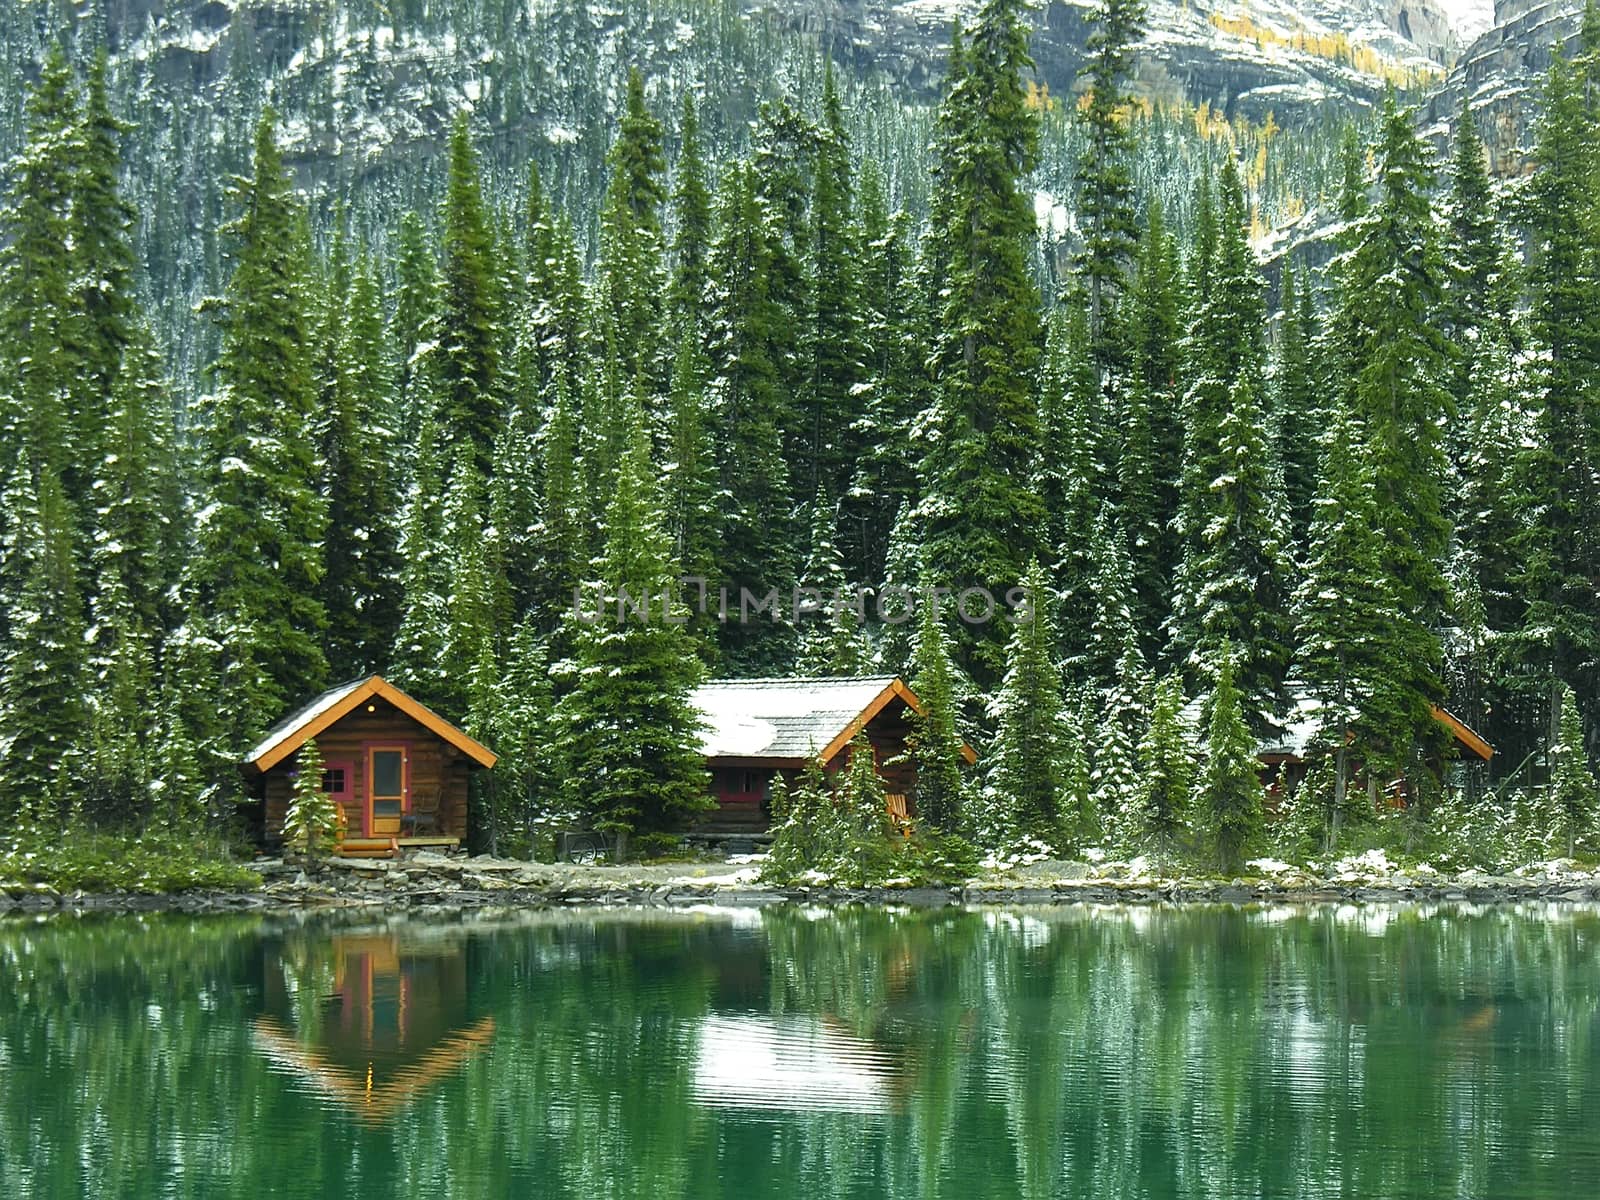 Wooden cabins at Lake O'Hara, Yoho National Park, Canada by donya_nedomam